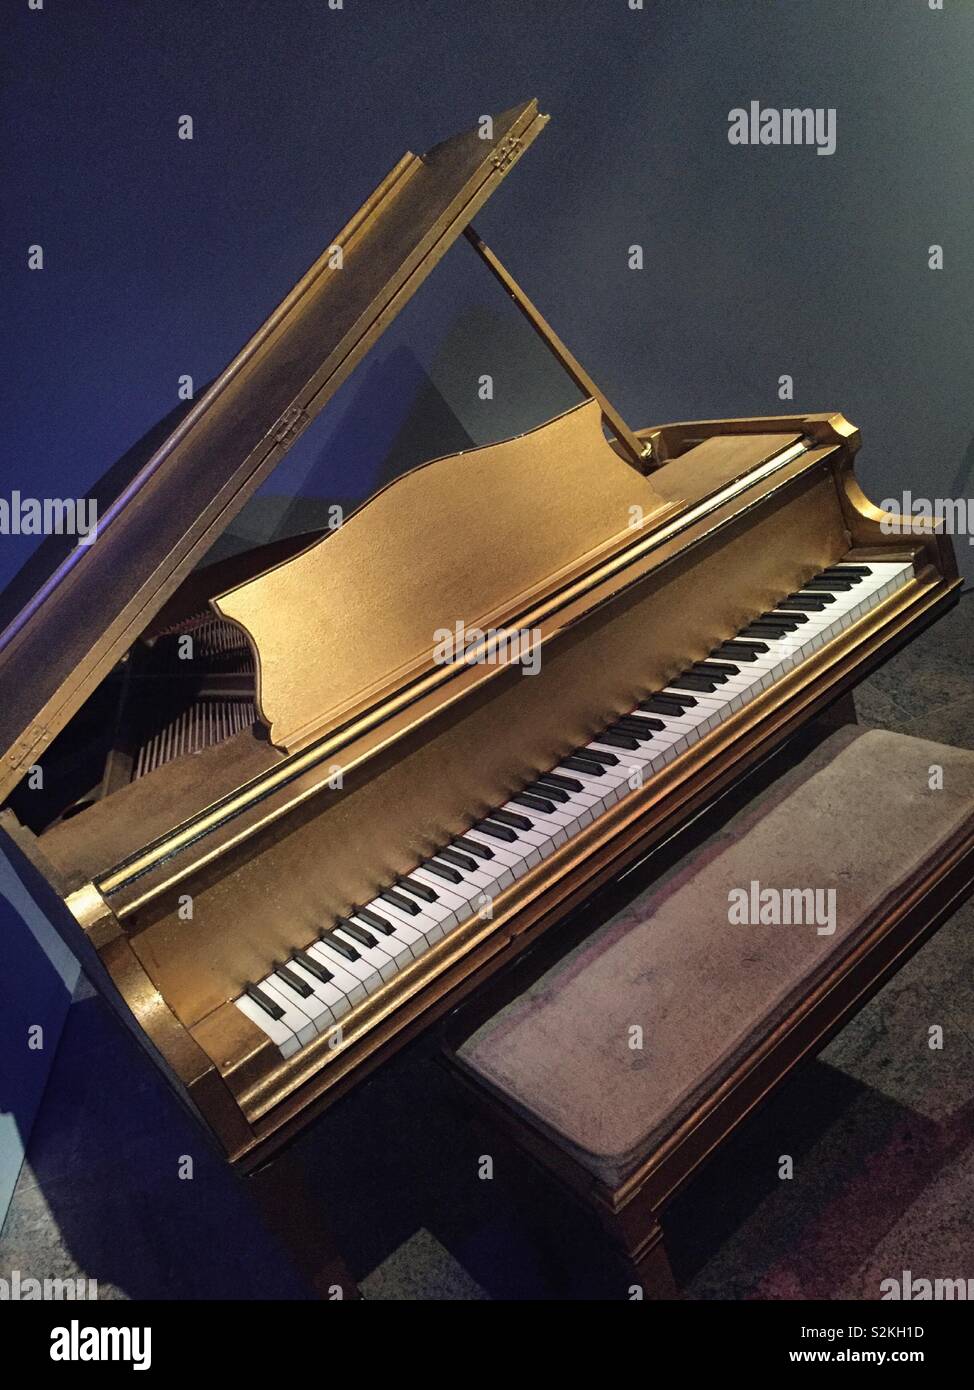 Klavier von Jerry Lee Lewis in den 50 Jahren, die Instrumente des Rock 'n'  Roll Ausstellung im Metropolitan Museum of Art, New York, USA  Stockfotografie - Alamy